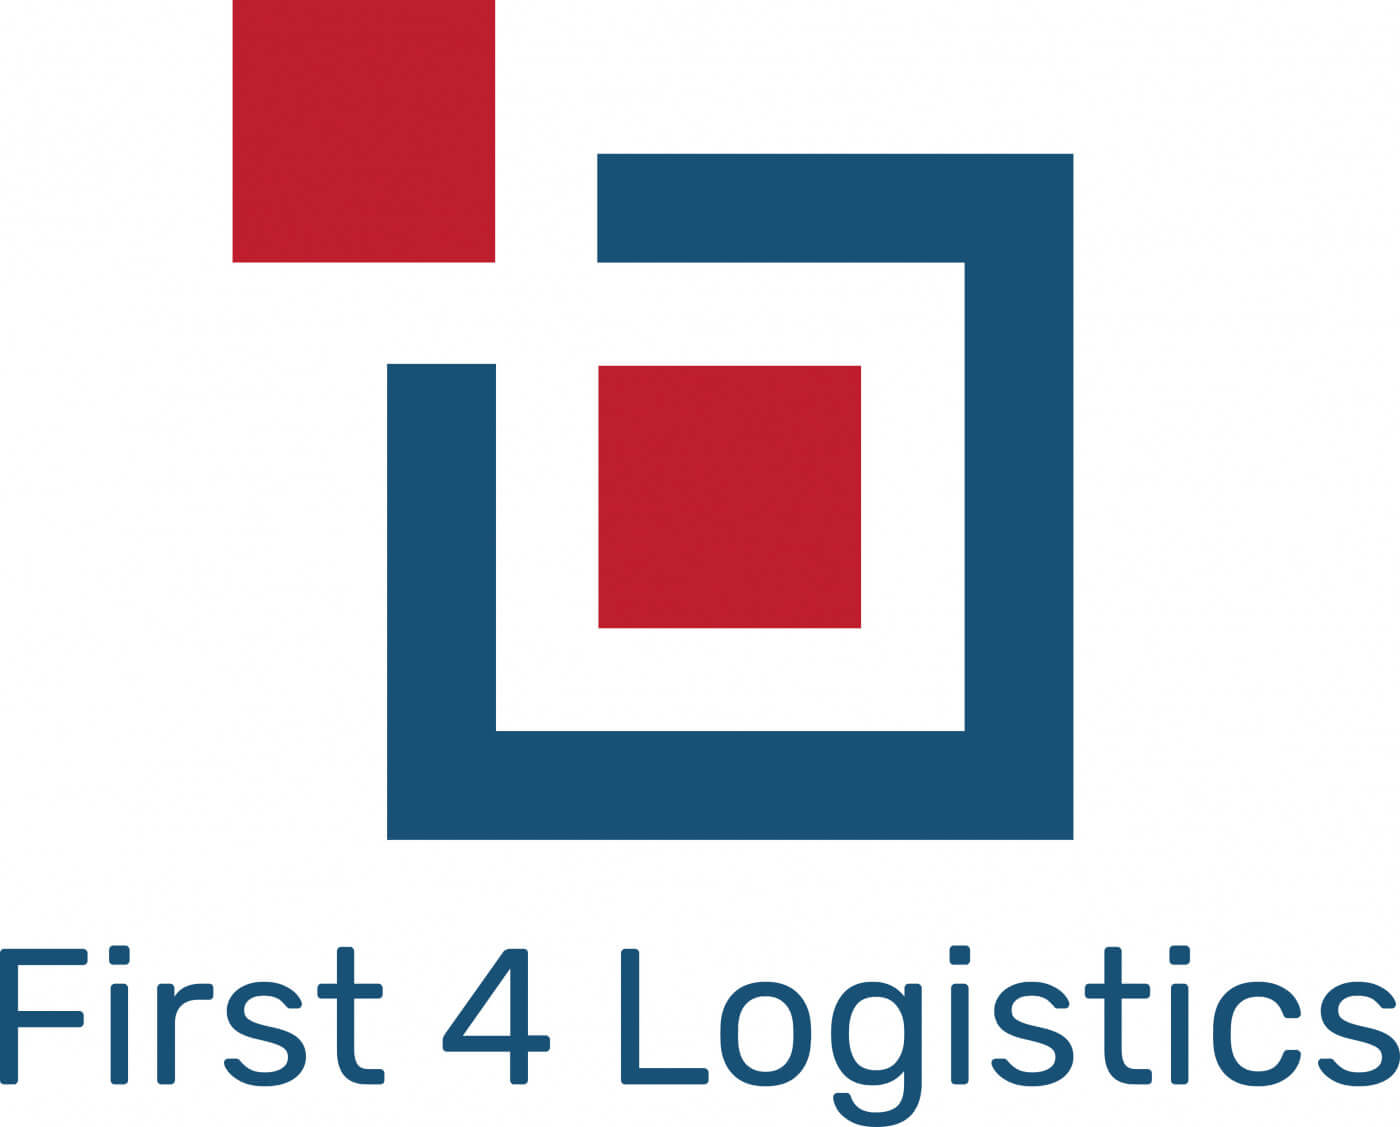 First 4 Logistics